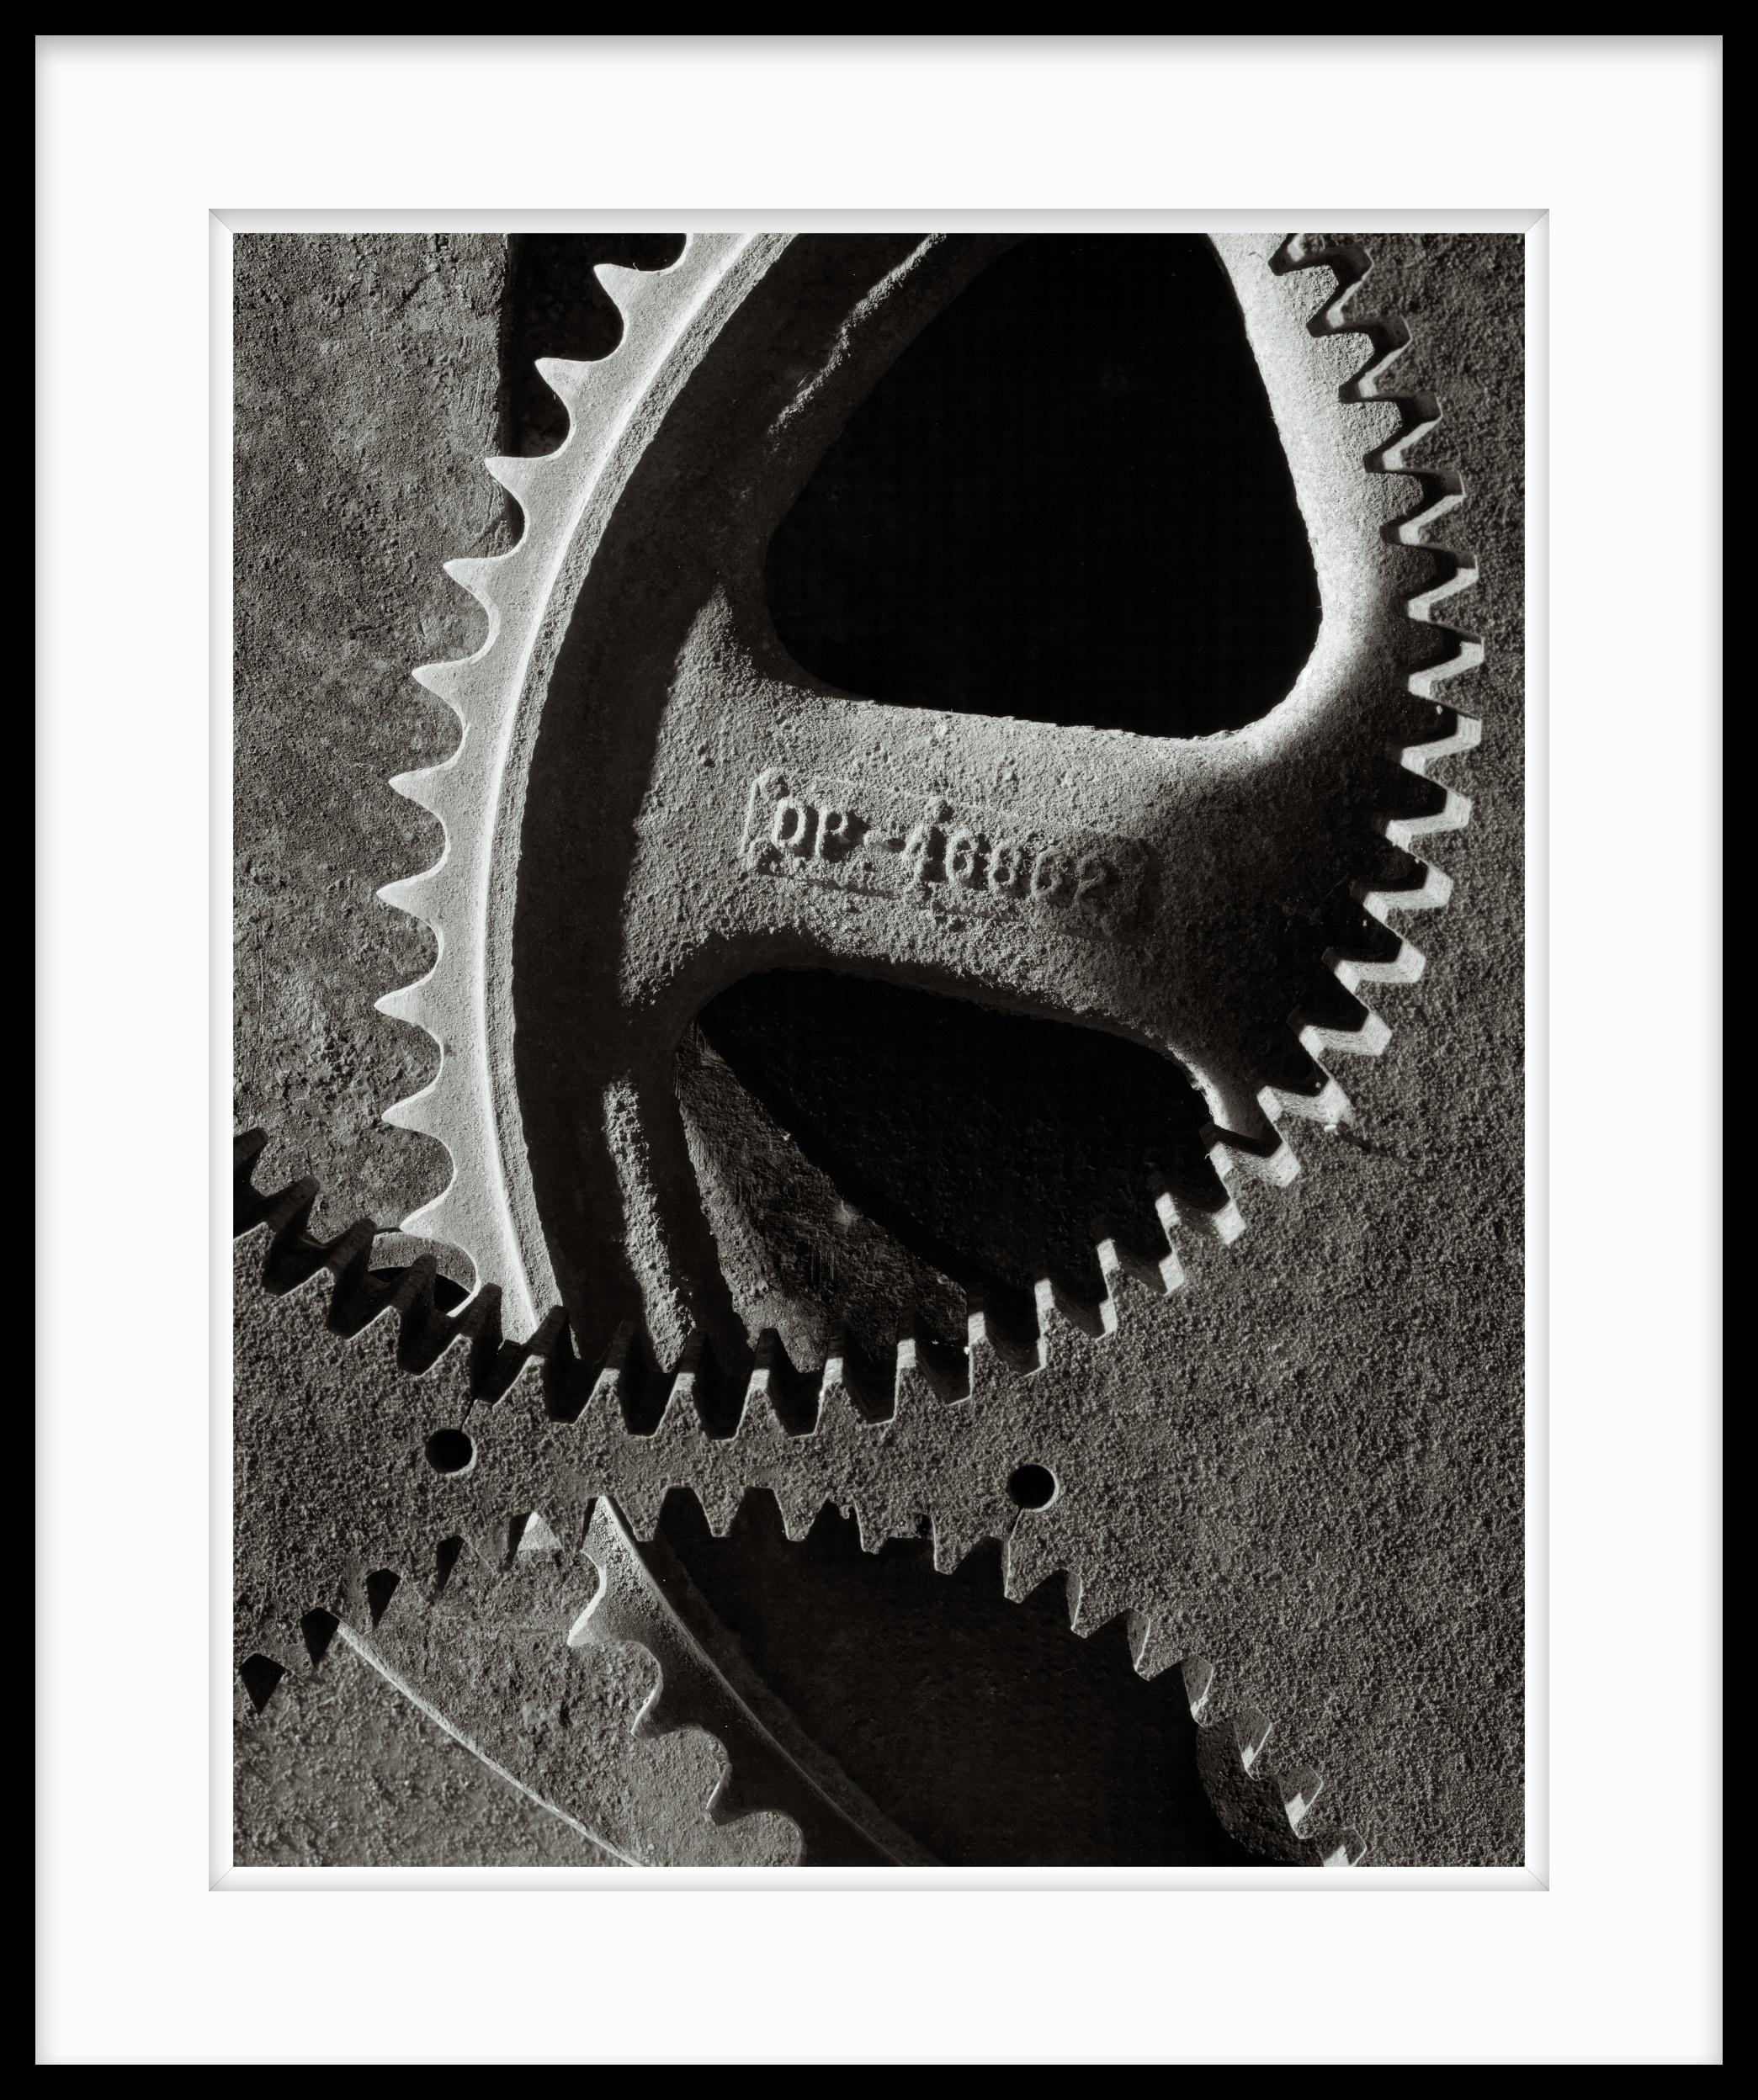  Schwarz-Weiß-Stillleben-Fotografie, Inner Workings #1, limitierte Auflage (Zeitgenössisch), Photograph, von Howard Lewis